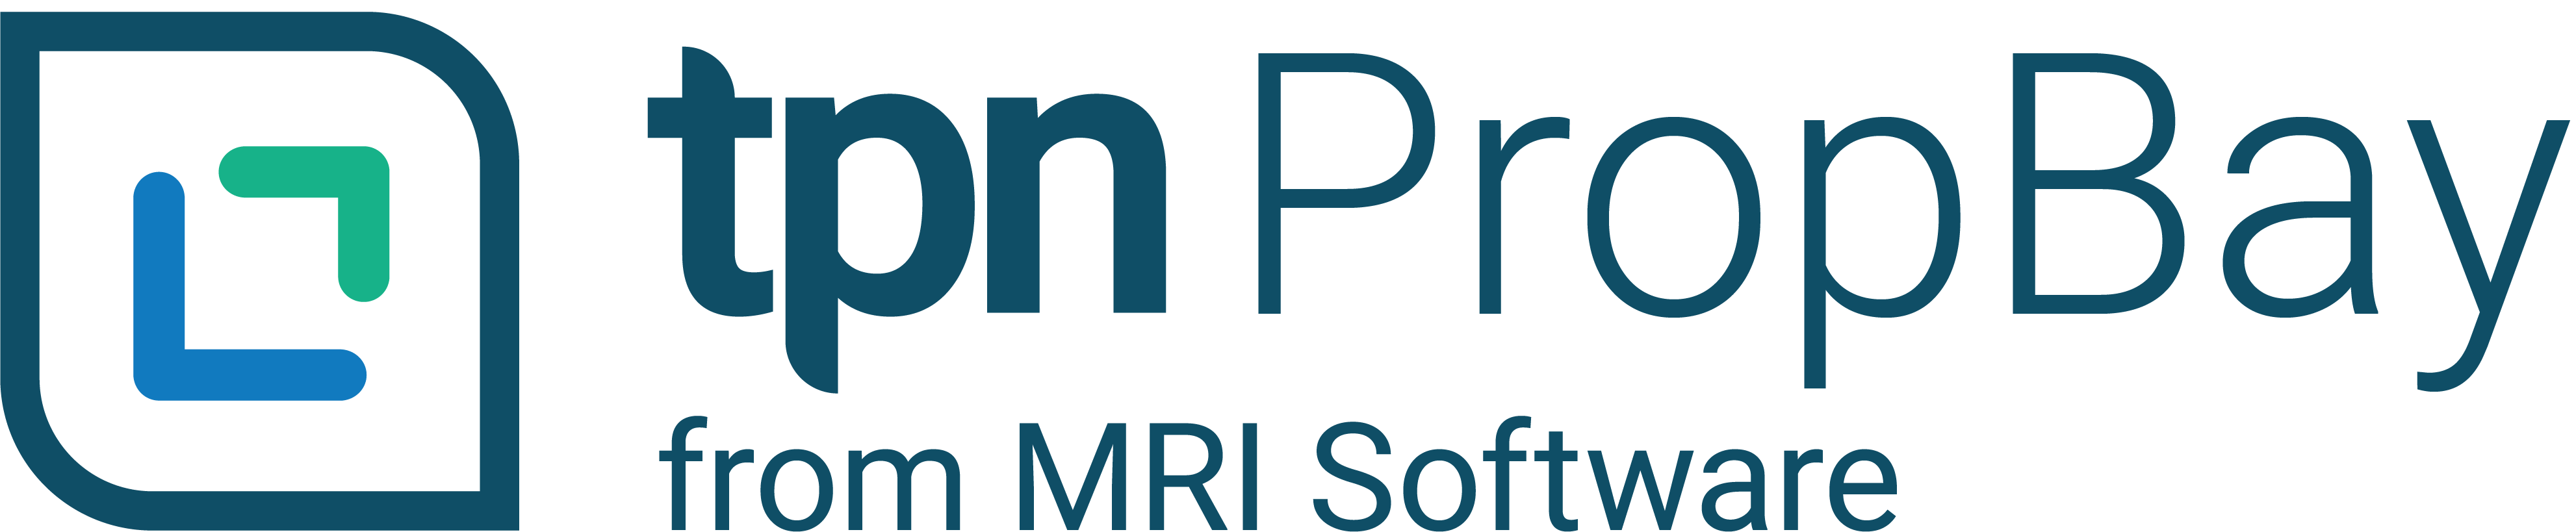 Propbay Logo